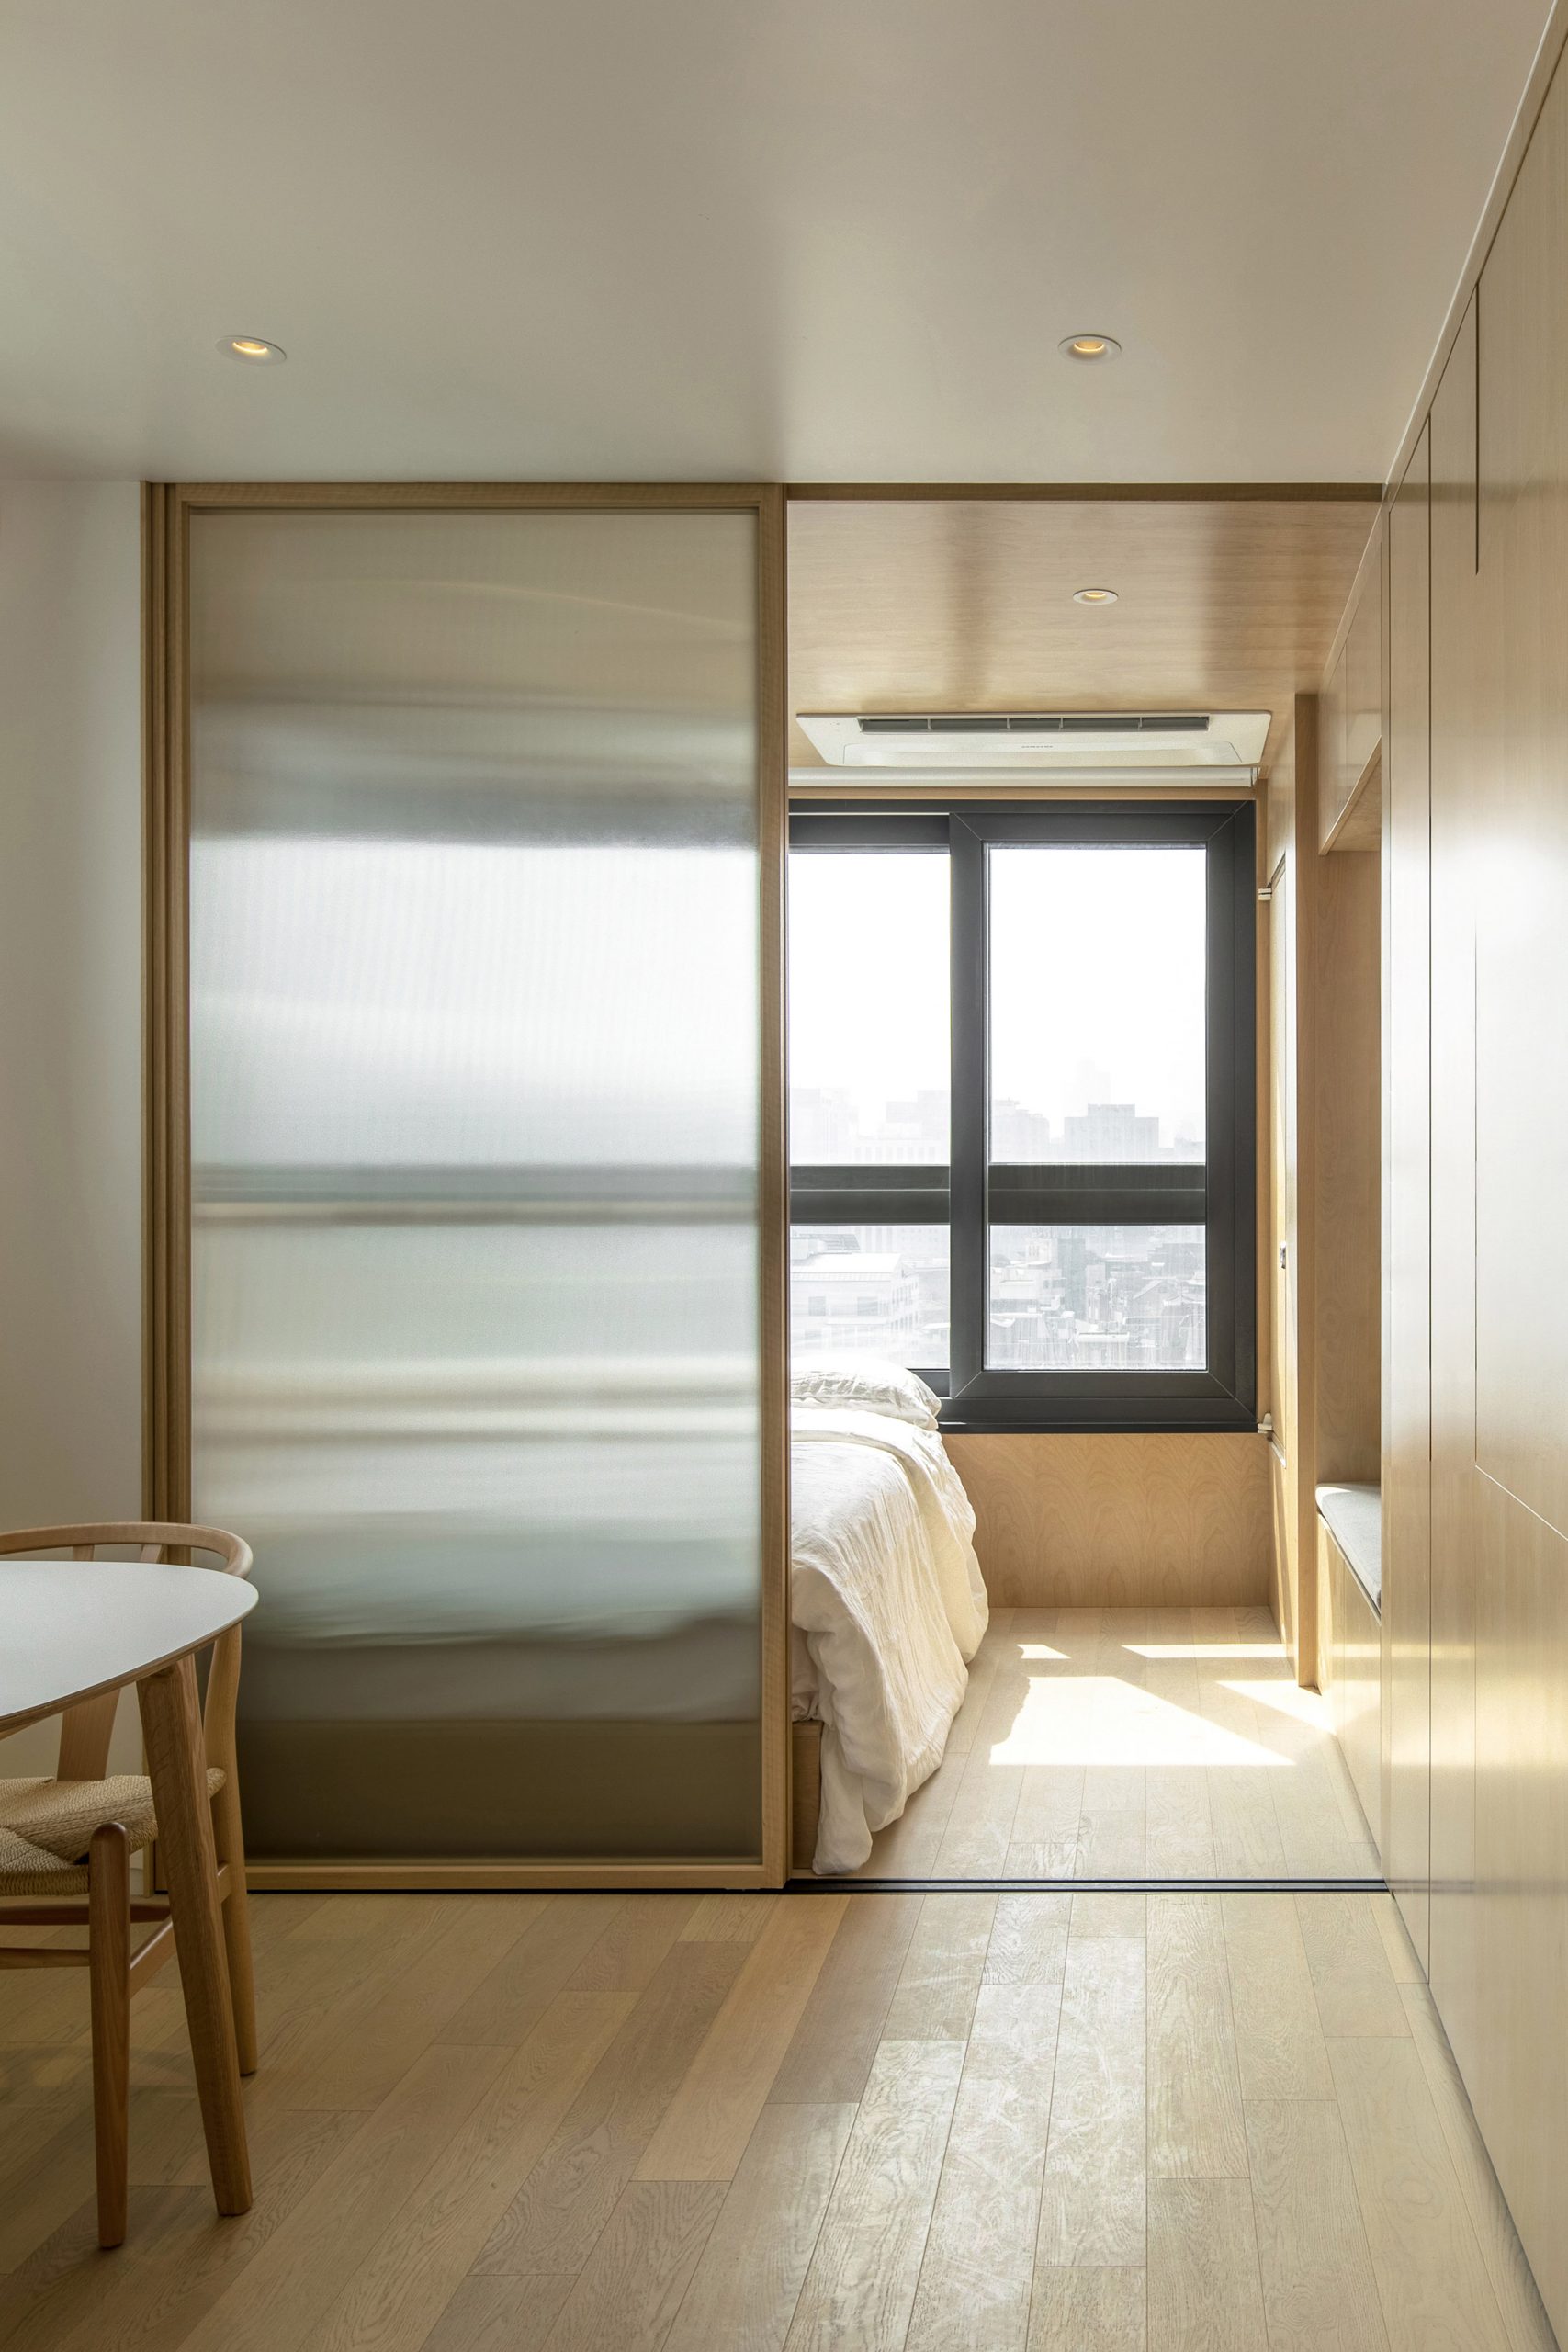 Hình ảnh phòng ngủ trong căn hộ cho thuê siêu nhỏ (mỗi phòng chỉ từ 16m² - 23m²) tại Seoul, Hàn Quốc. Các vách ngăn kính trượt phân chia các phòng với cửa kính mờ nhằm tăng thêm sự riêng tư giữa phòng ngủ và không gian sinh hoạt chung.